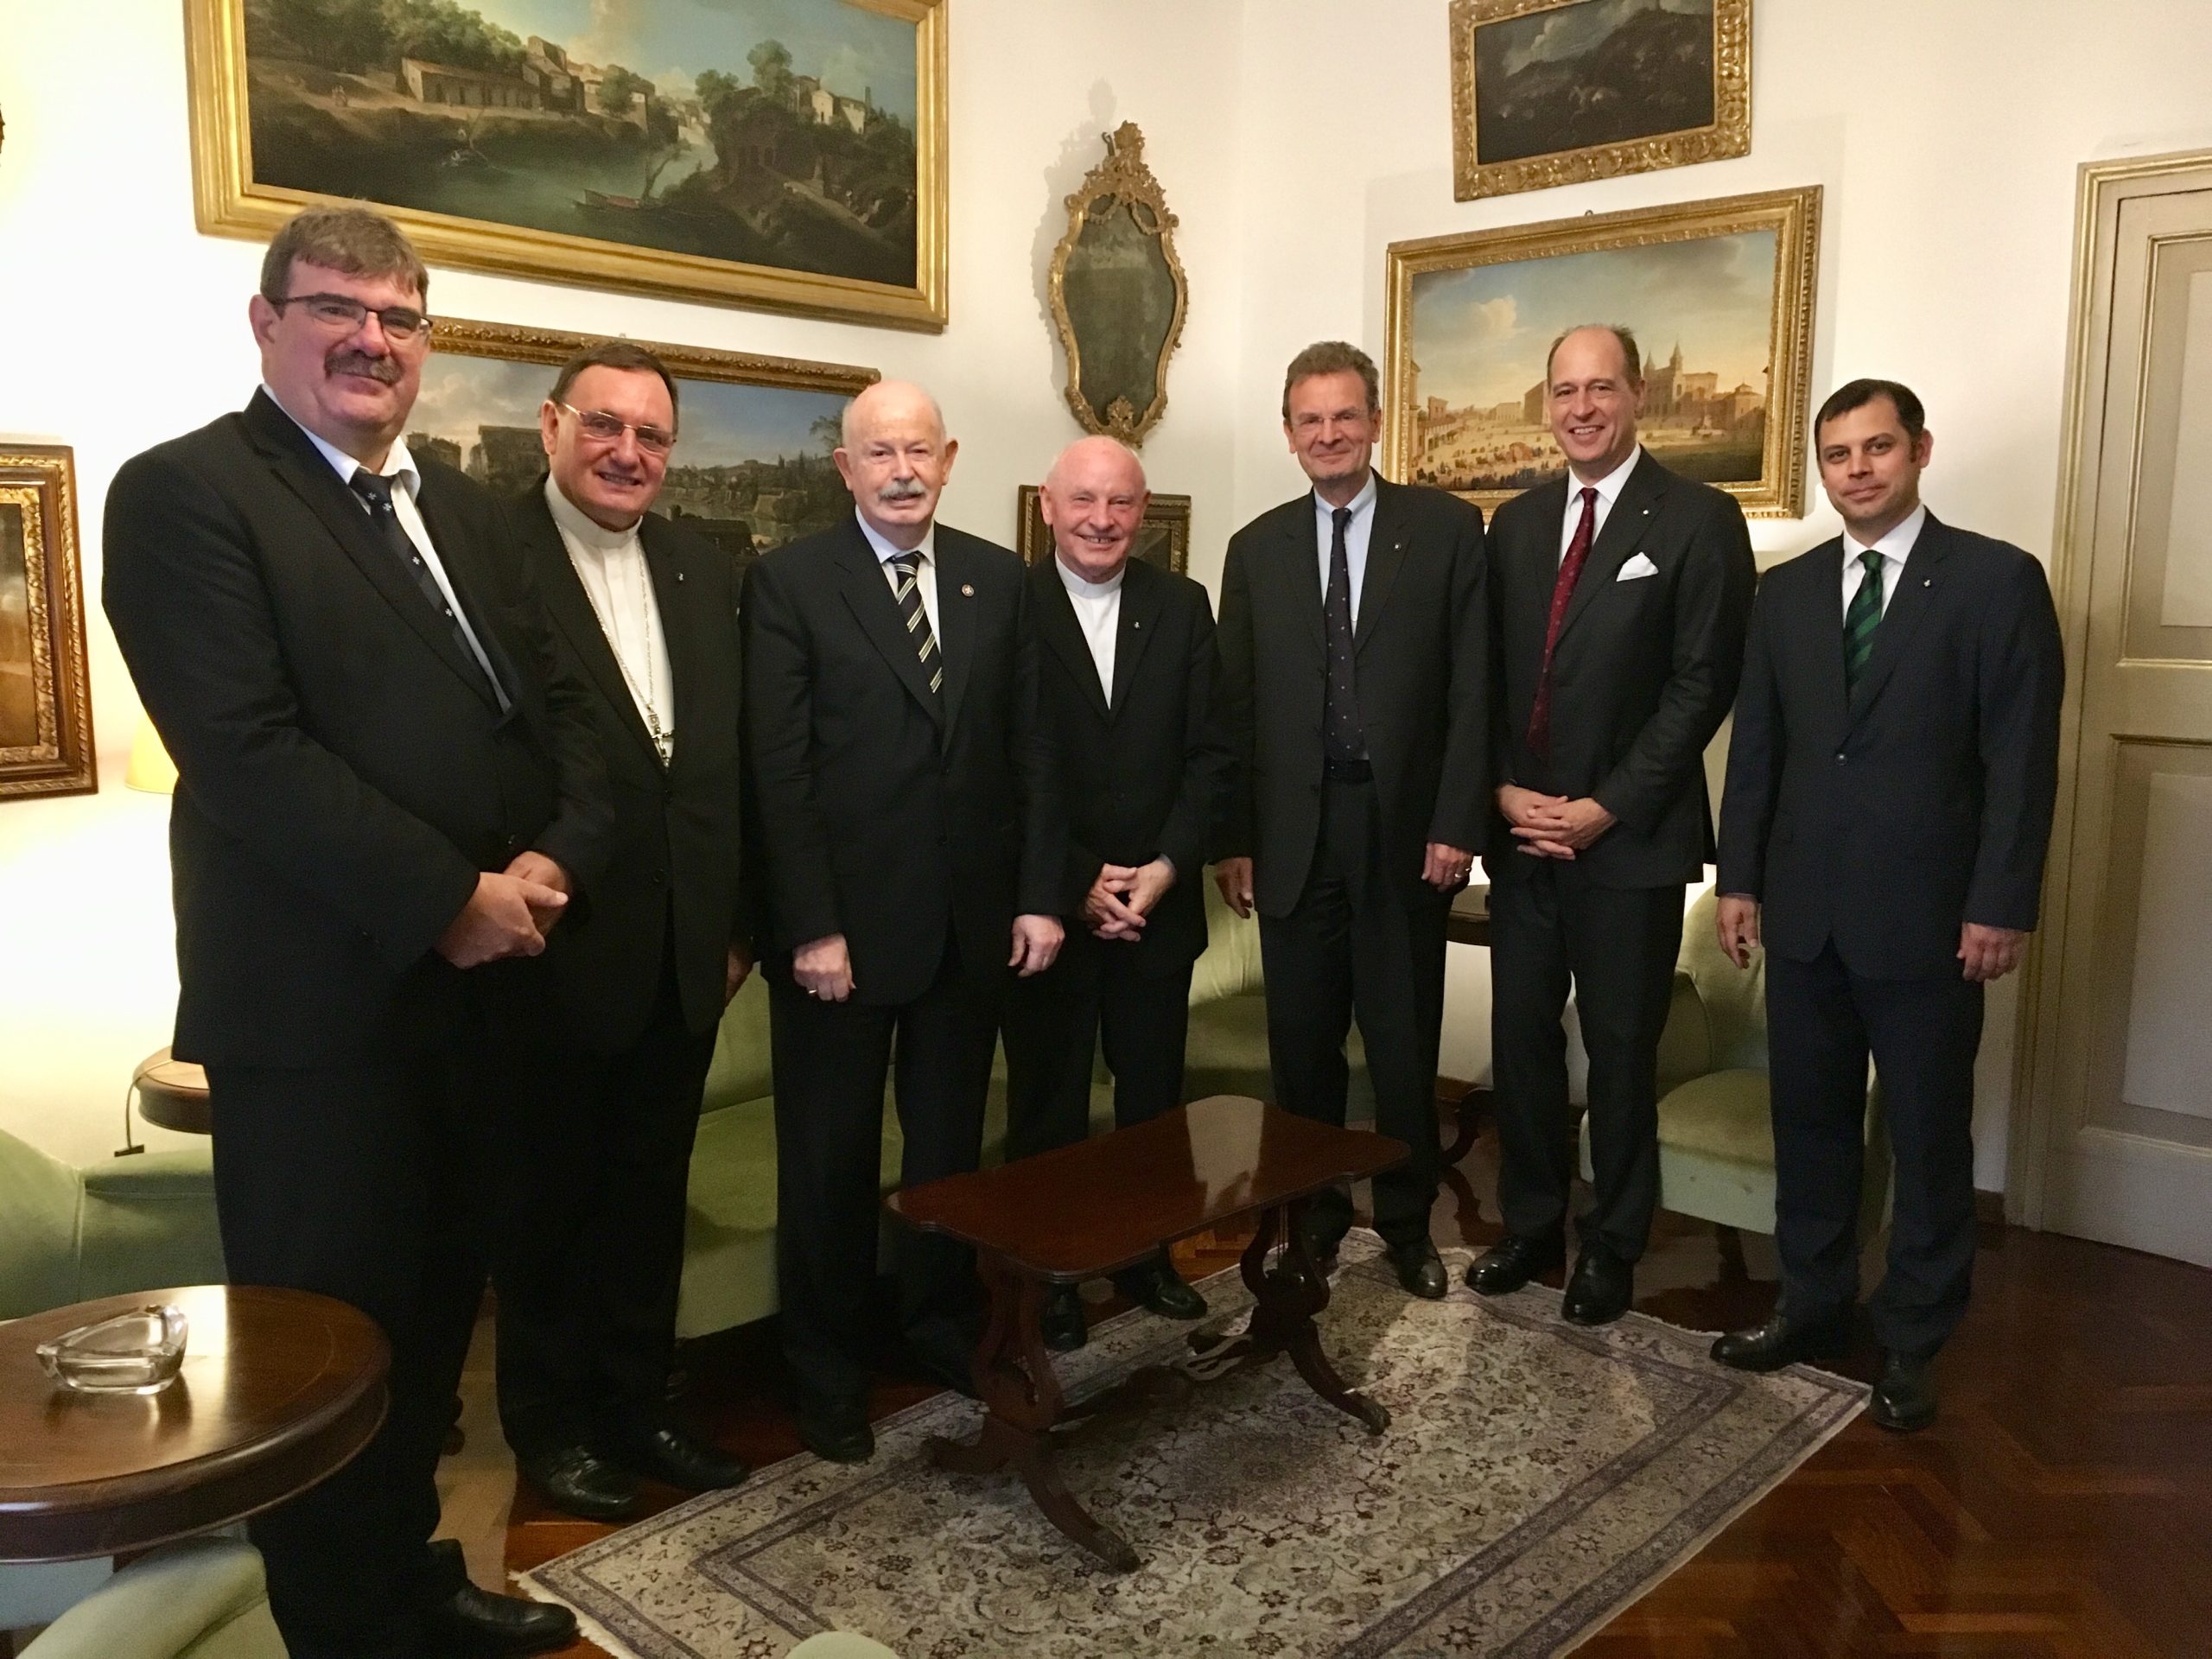 Les dirigeants de l’Association hongroise reçus par le Grand Maître